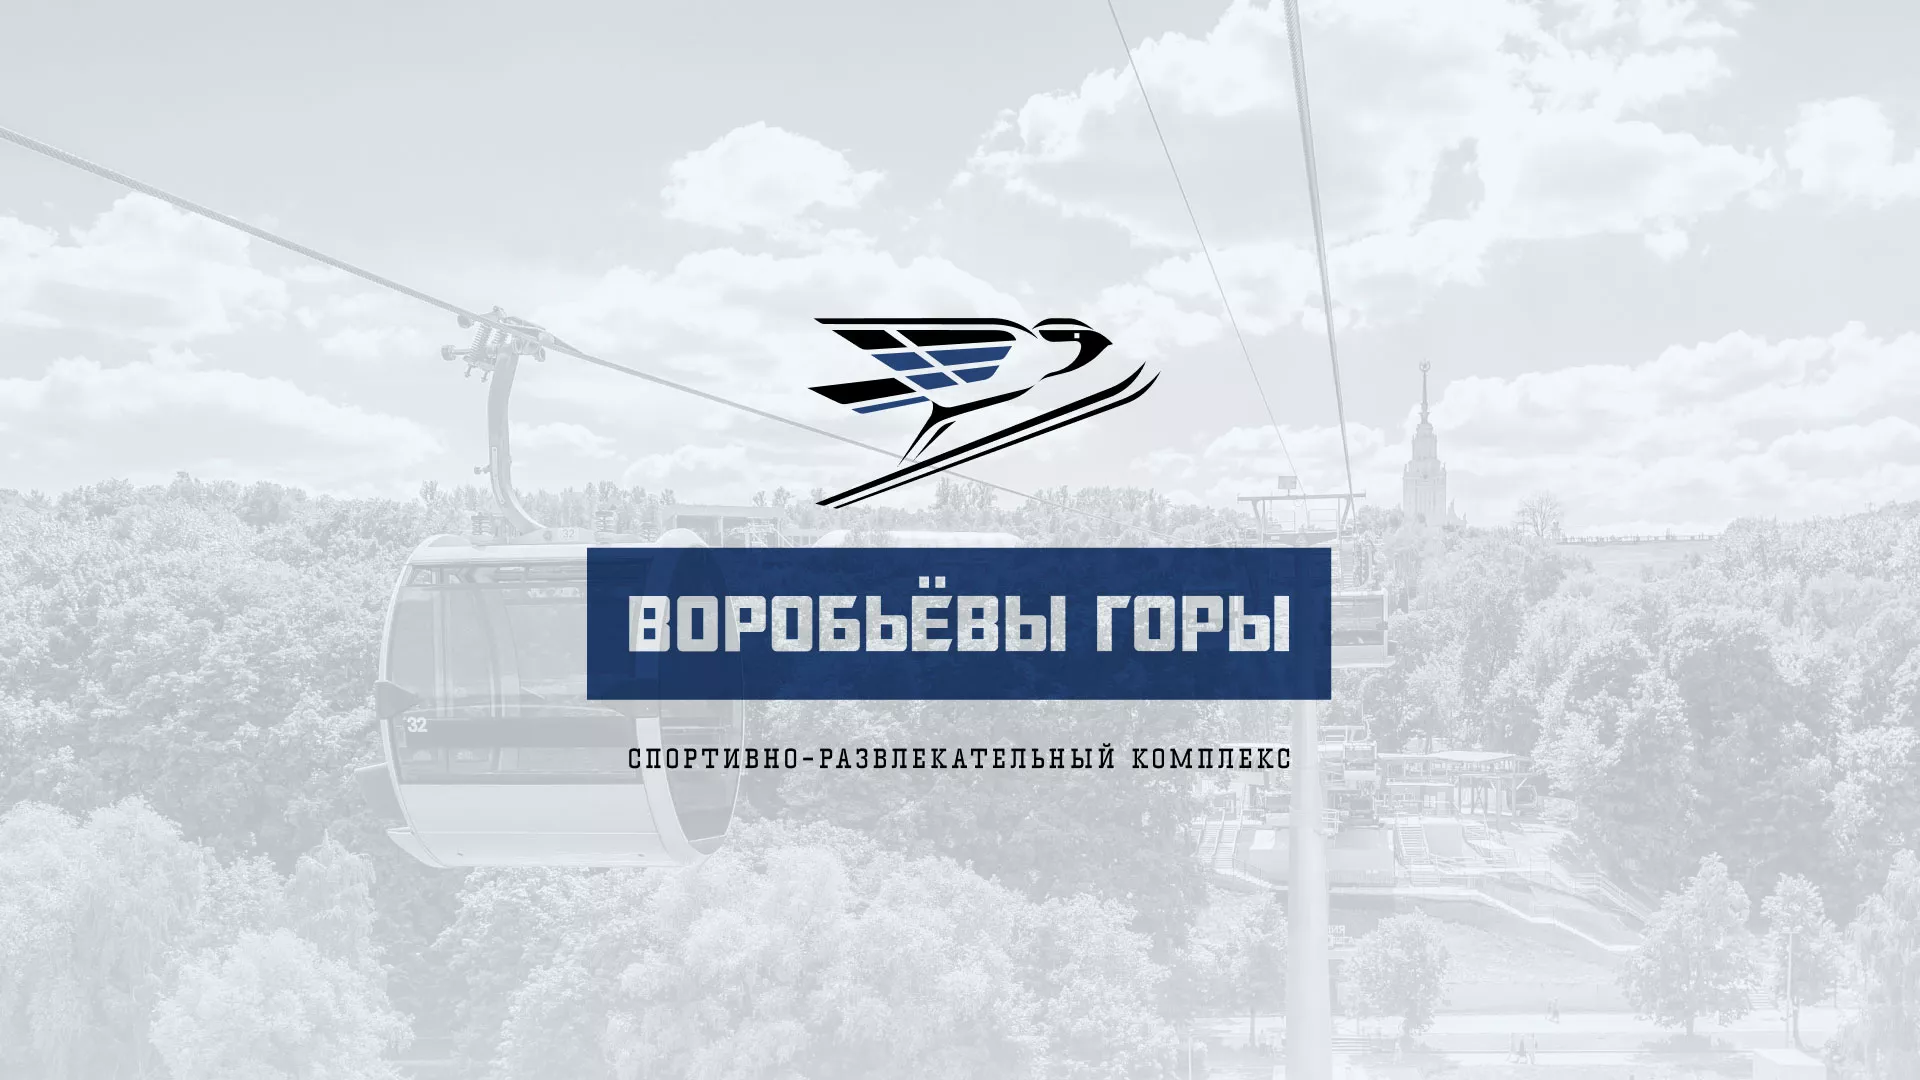 Разработка сайта в Пскове для спортивно-развлекательного комплекса «Воробьёвы горы»